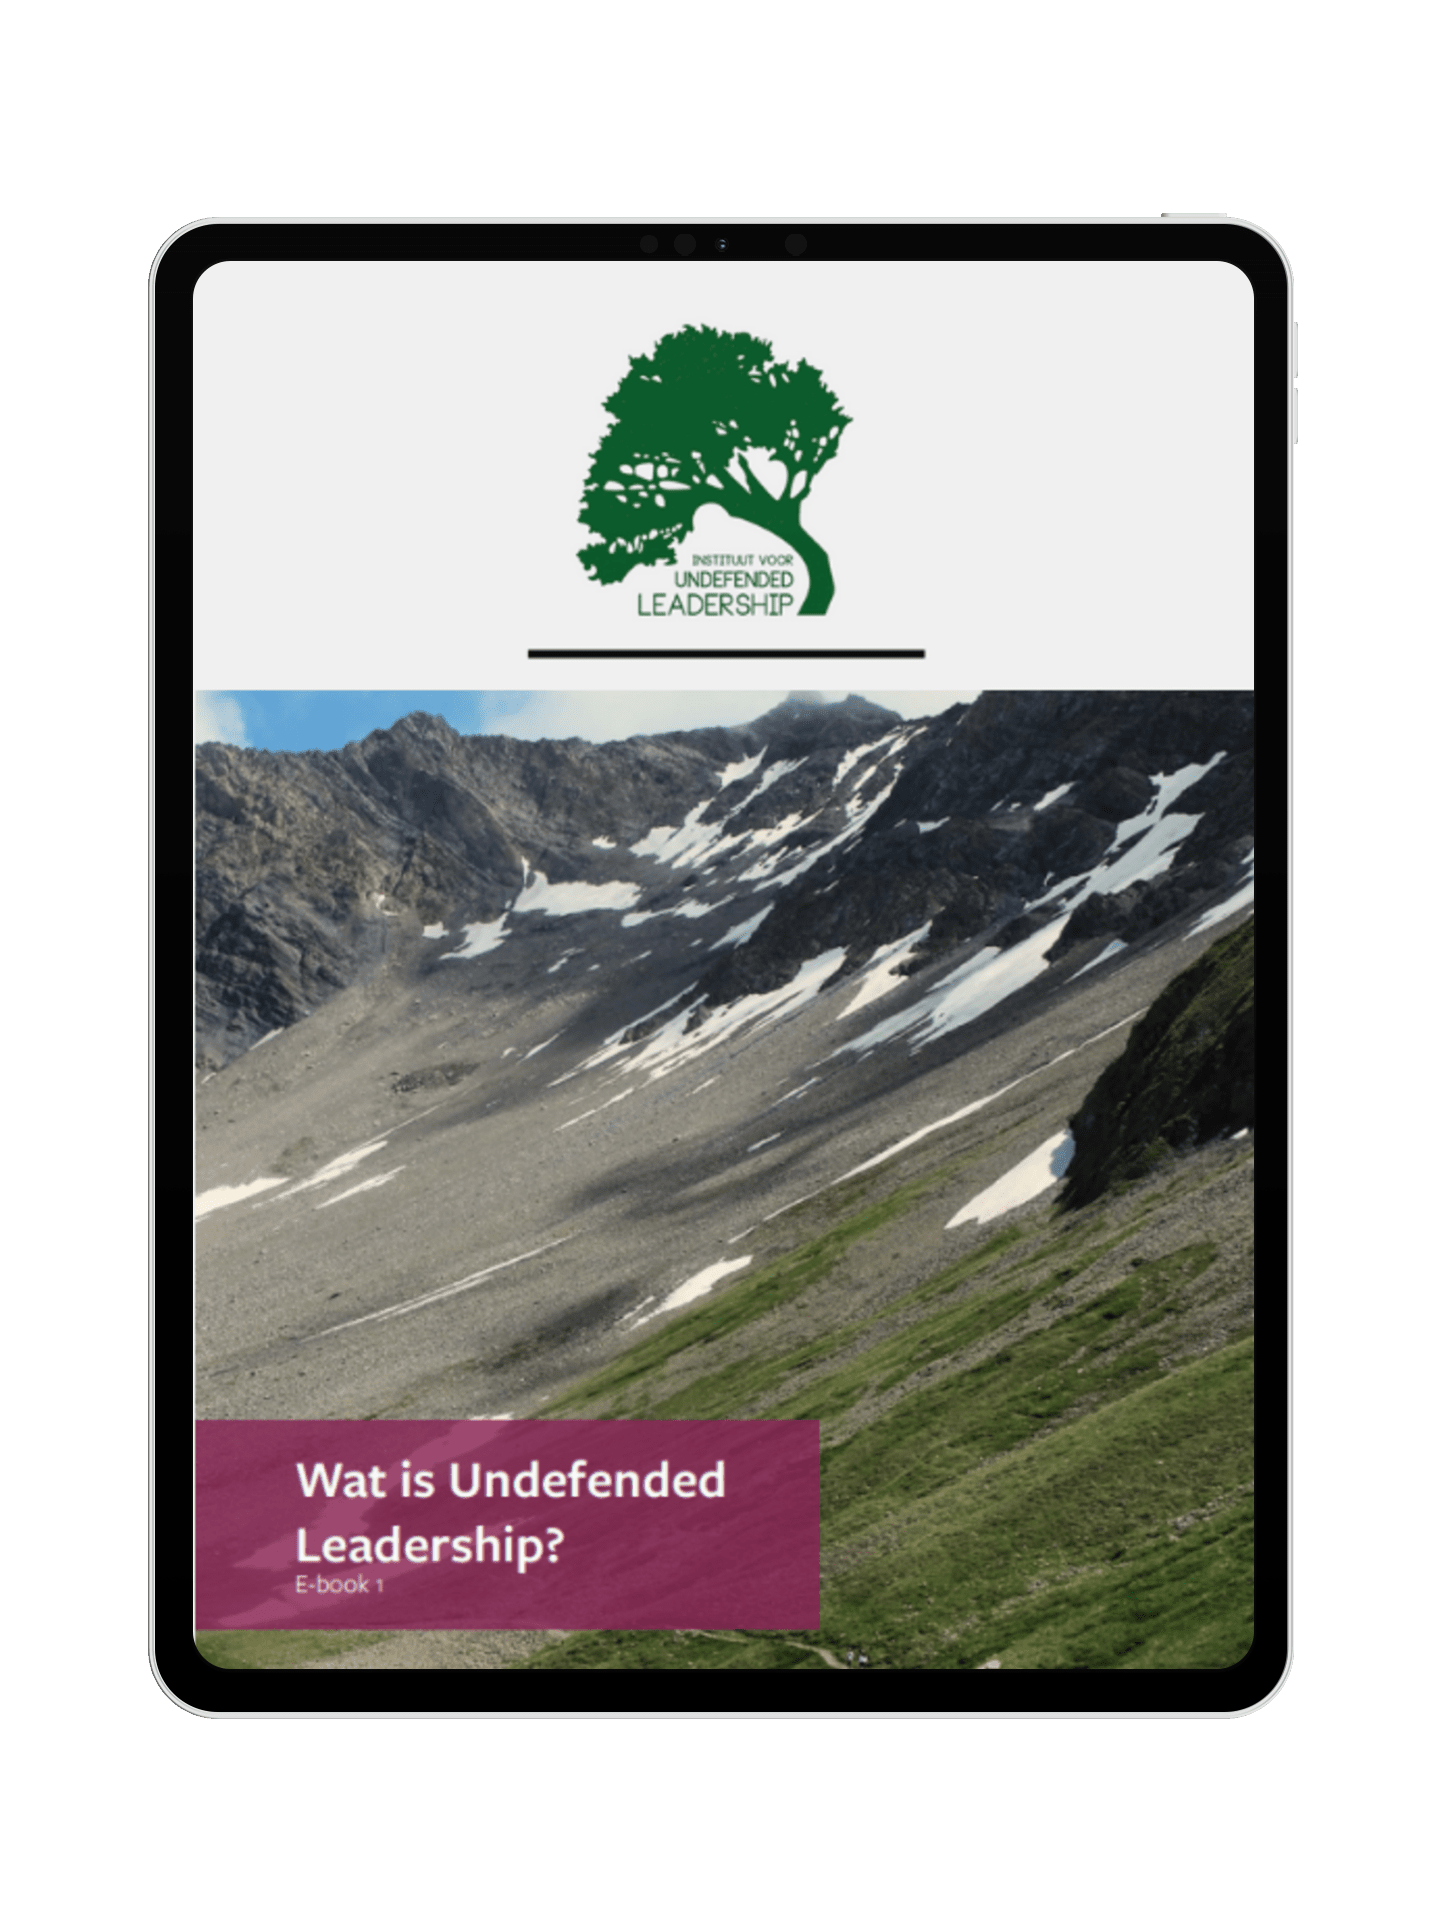 Ontvang ons gratis e-book ‘Wat is Undefended Leadership?’